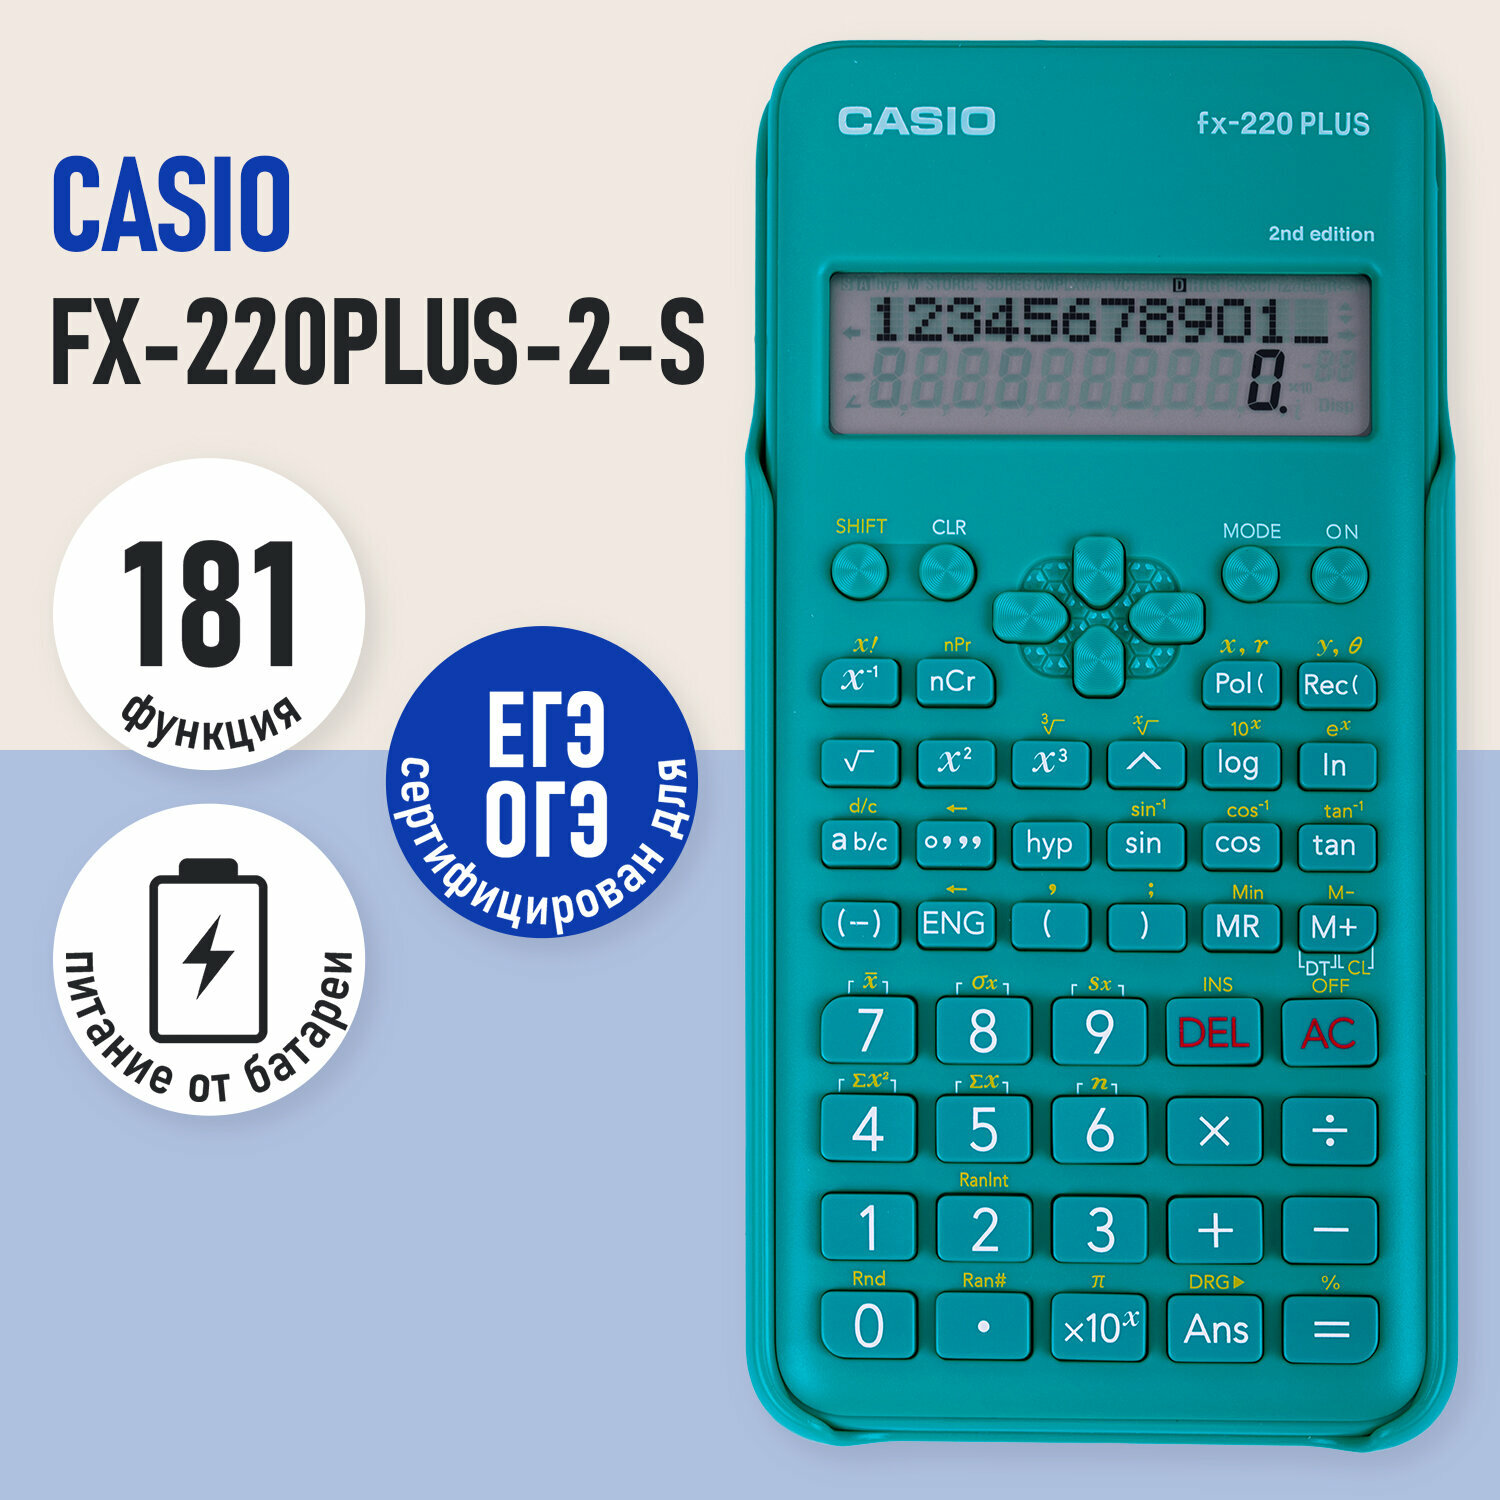 Калькулятор инженерный CASIO FX-220PLUS-2-S (155х78) 181 функция питание от батареи сертифицирован для ЕГЭ FX-220PLUS-2-S-